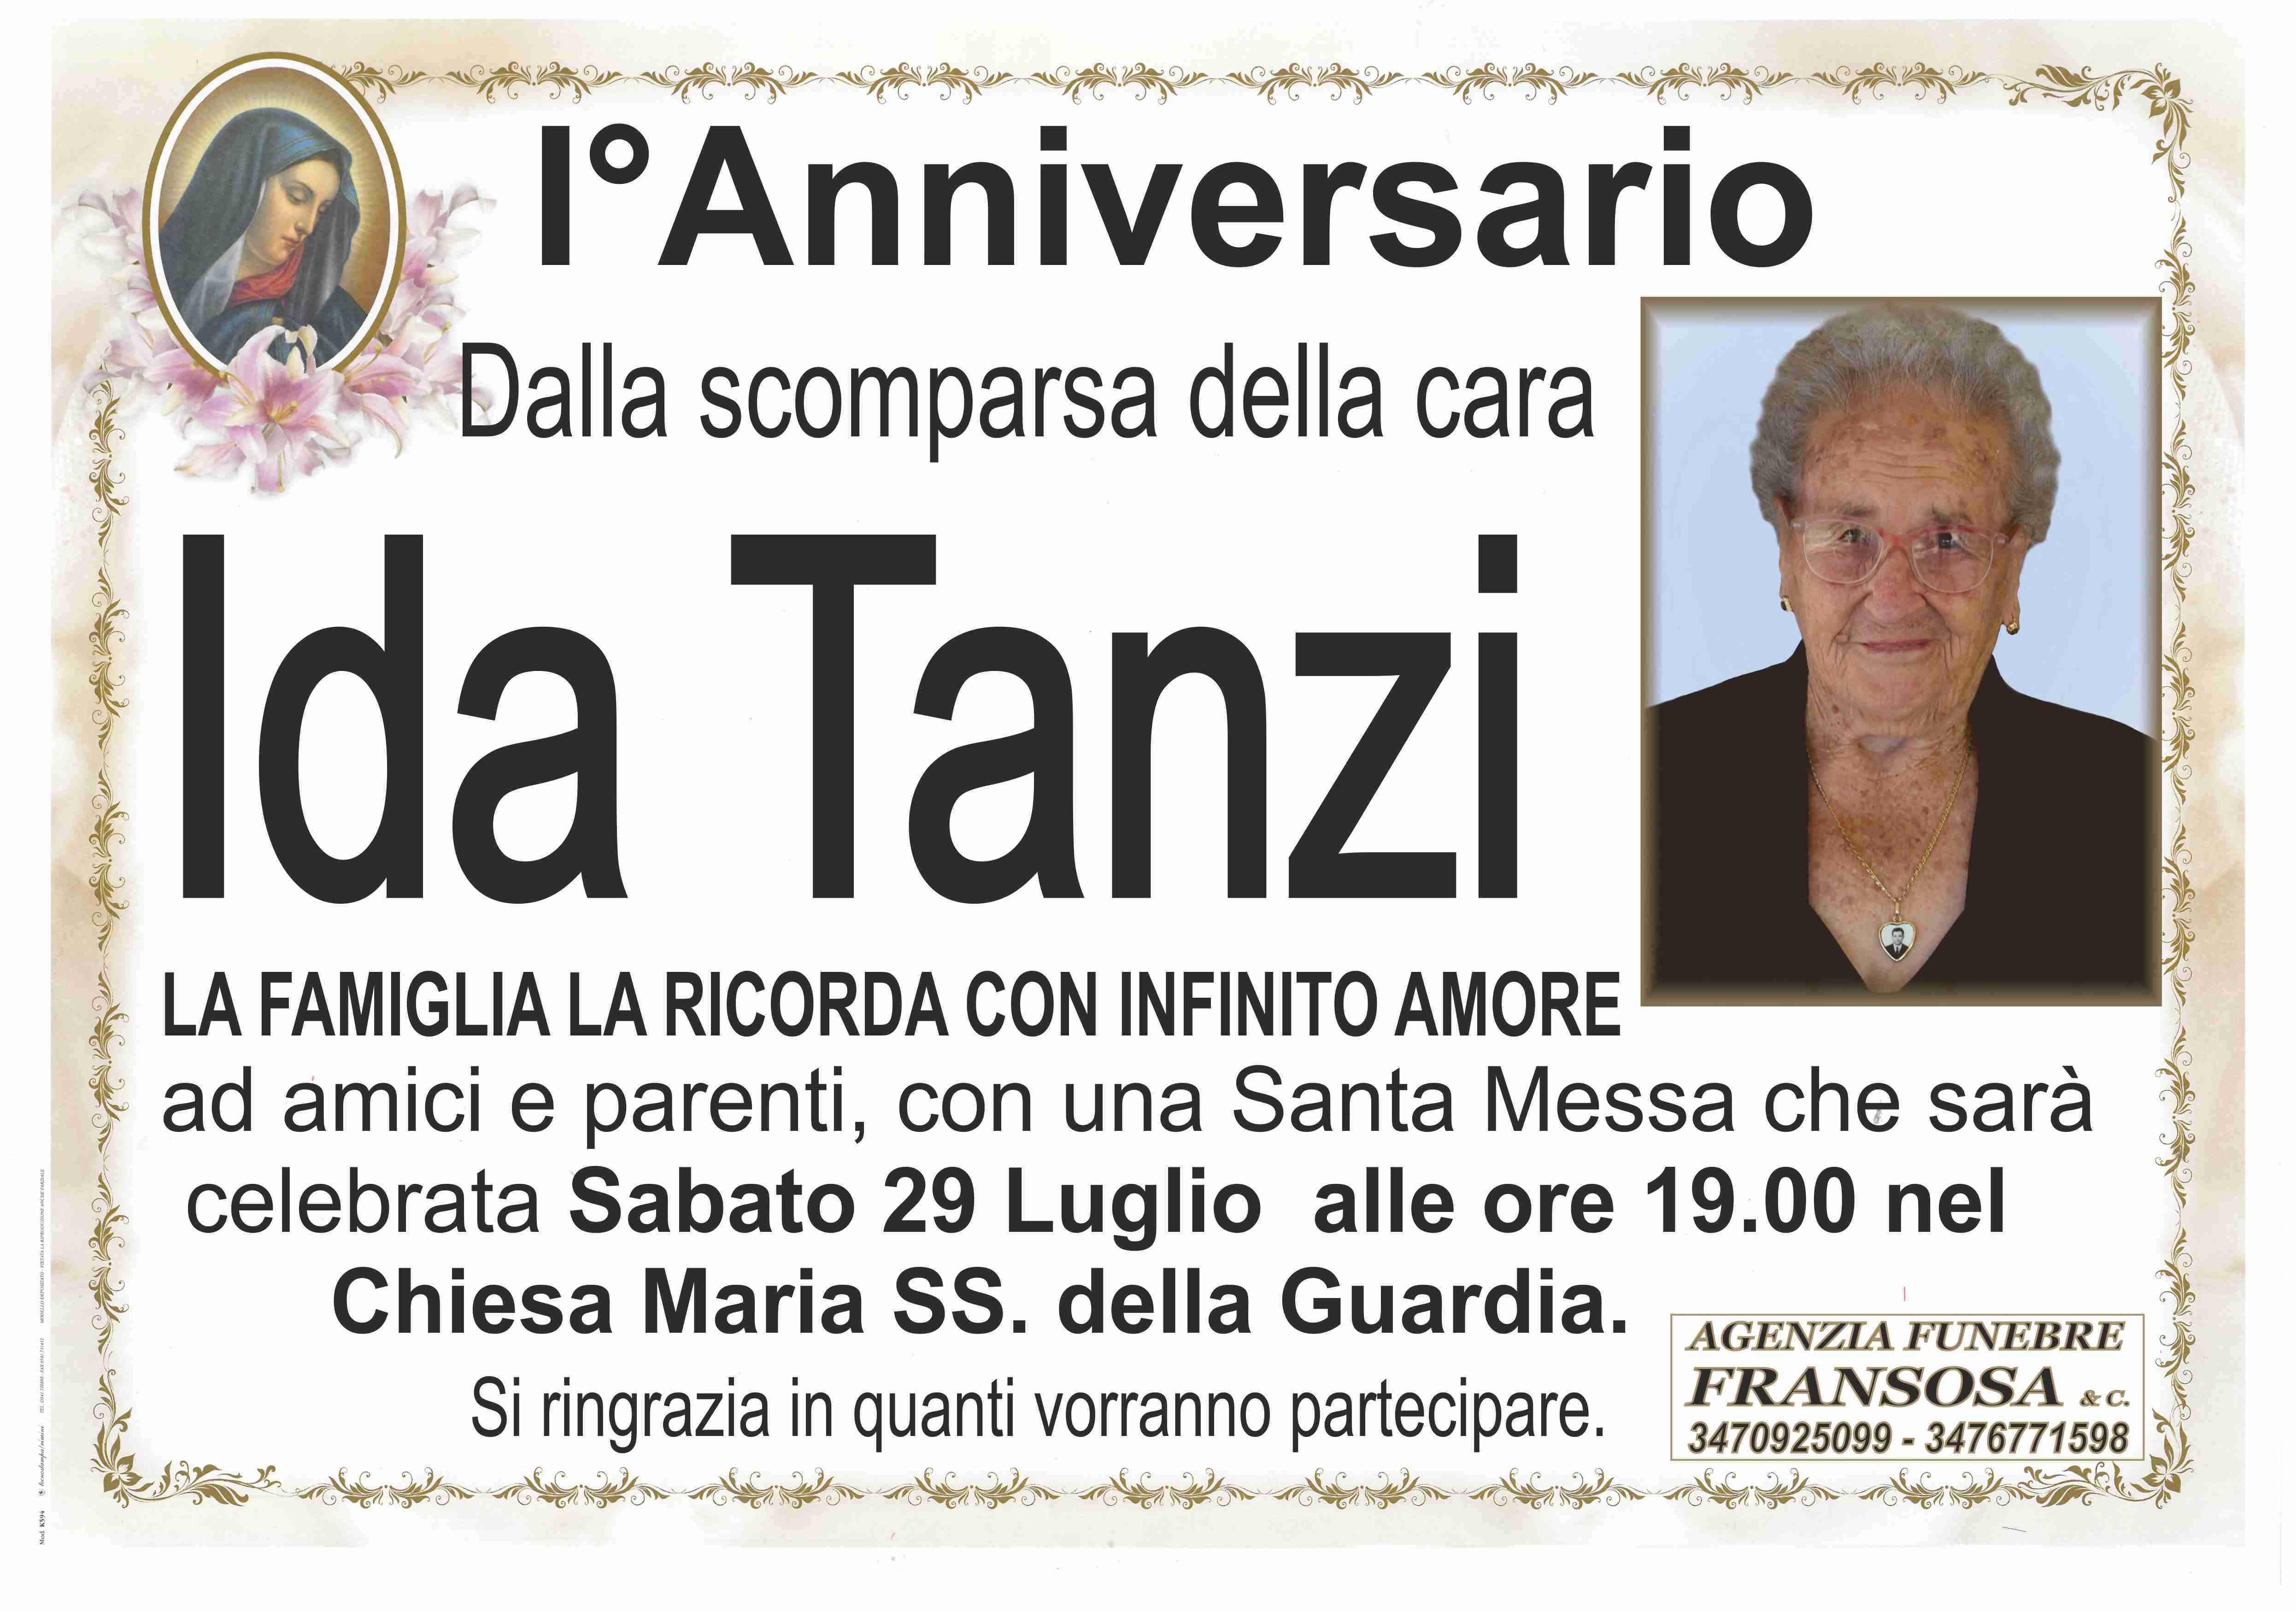 Ida Tanzi